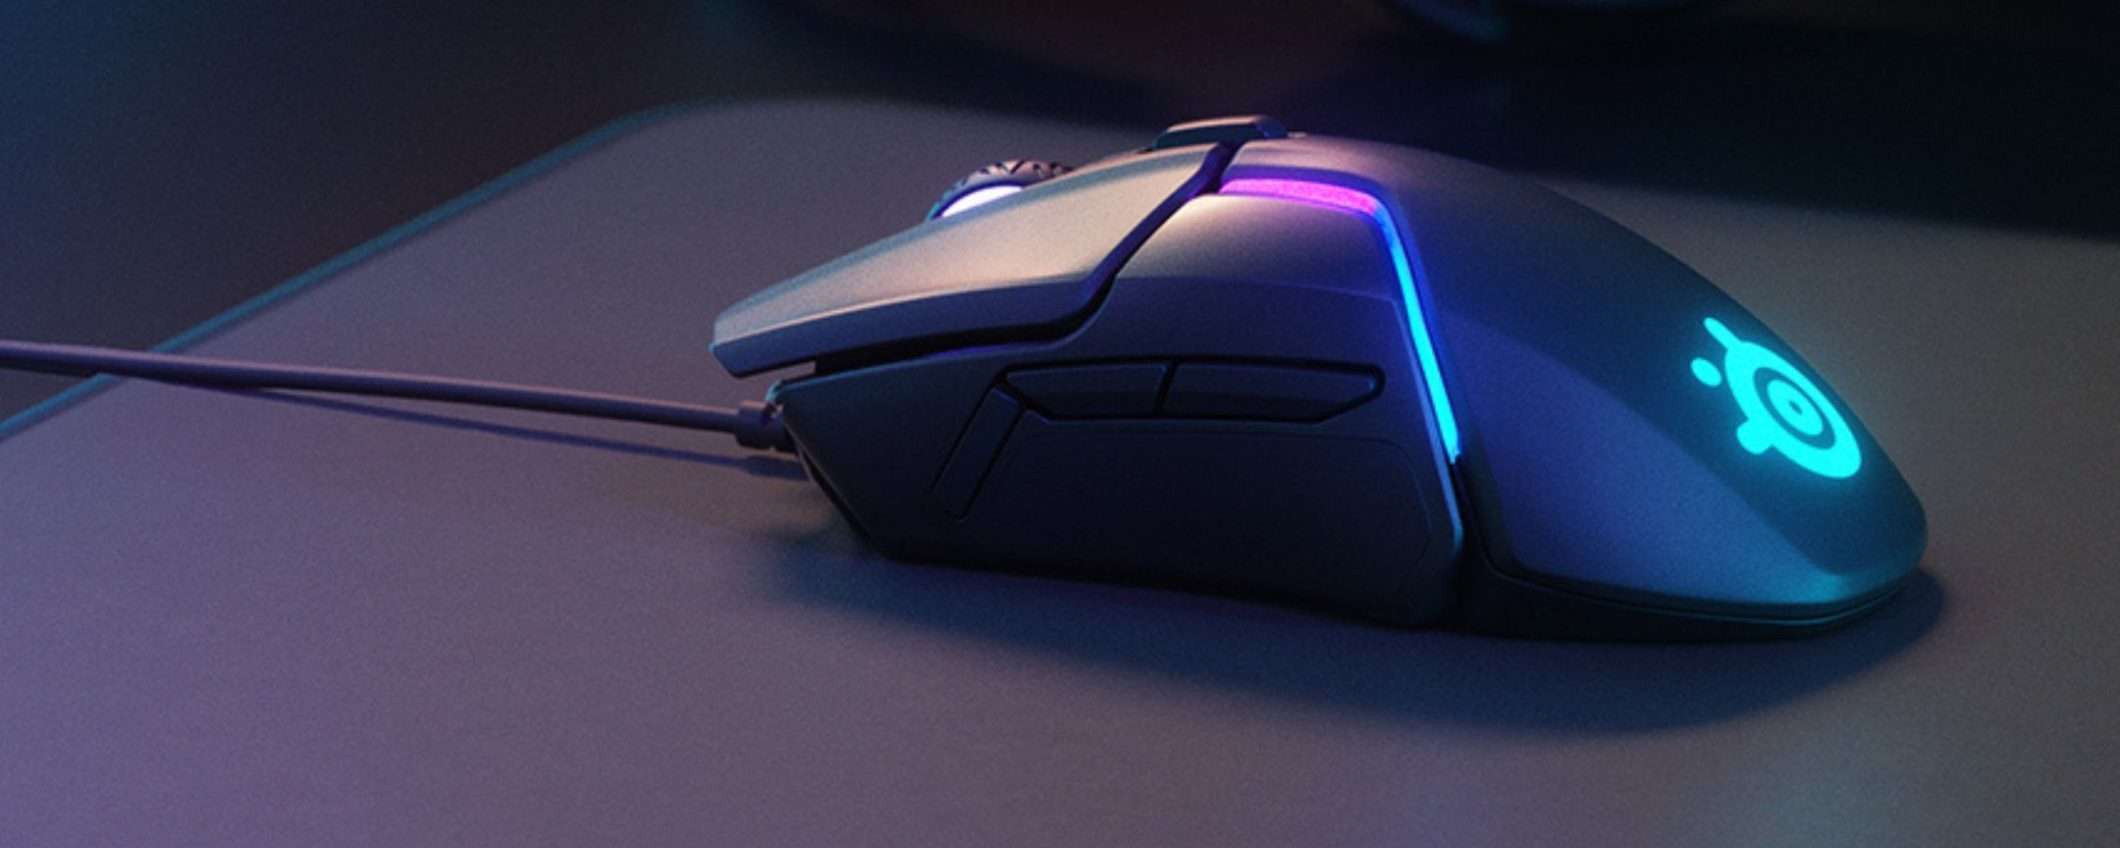 SteelSeries Rival 600, il mouse da PRO GAMER a prezzo STRACCIATO (59€)